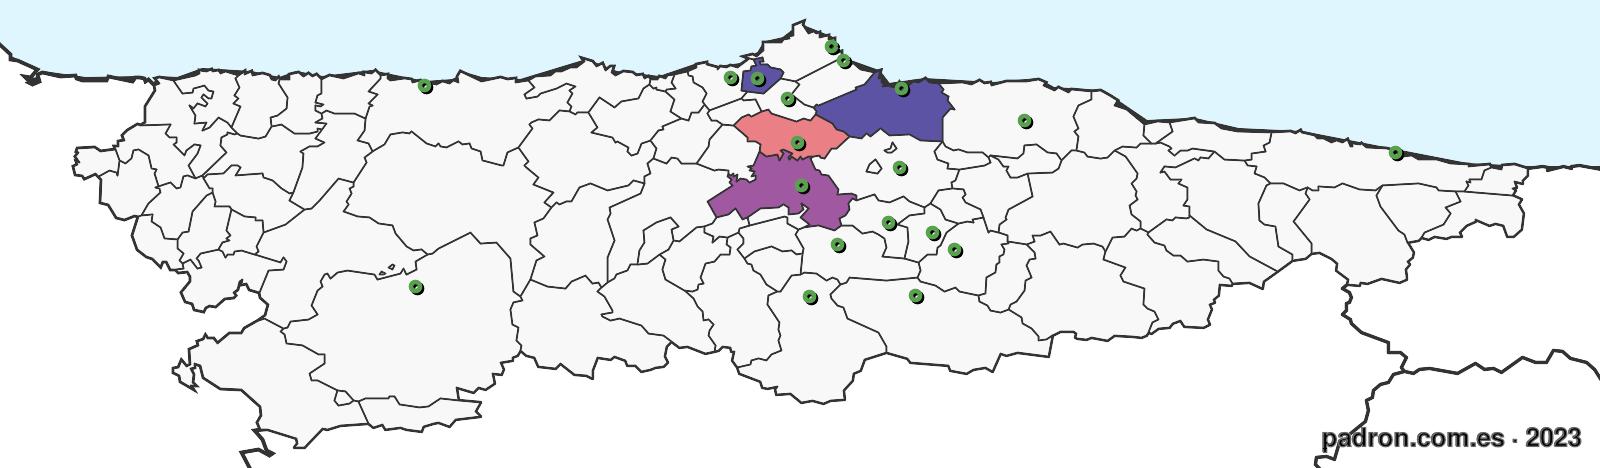 burkineses en asturias.